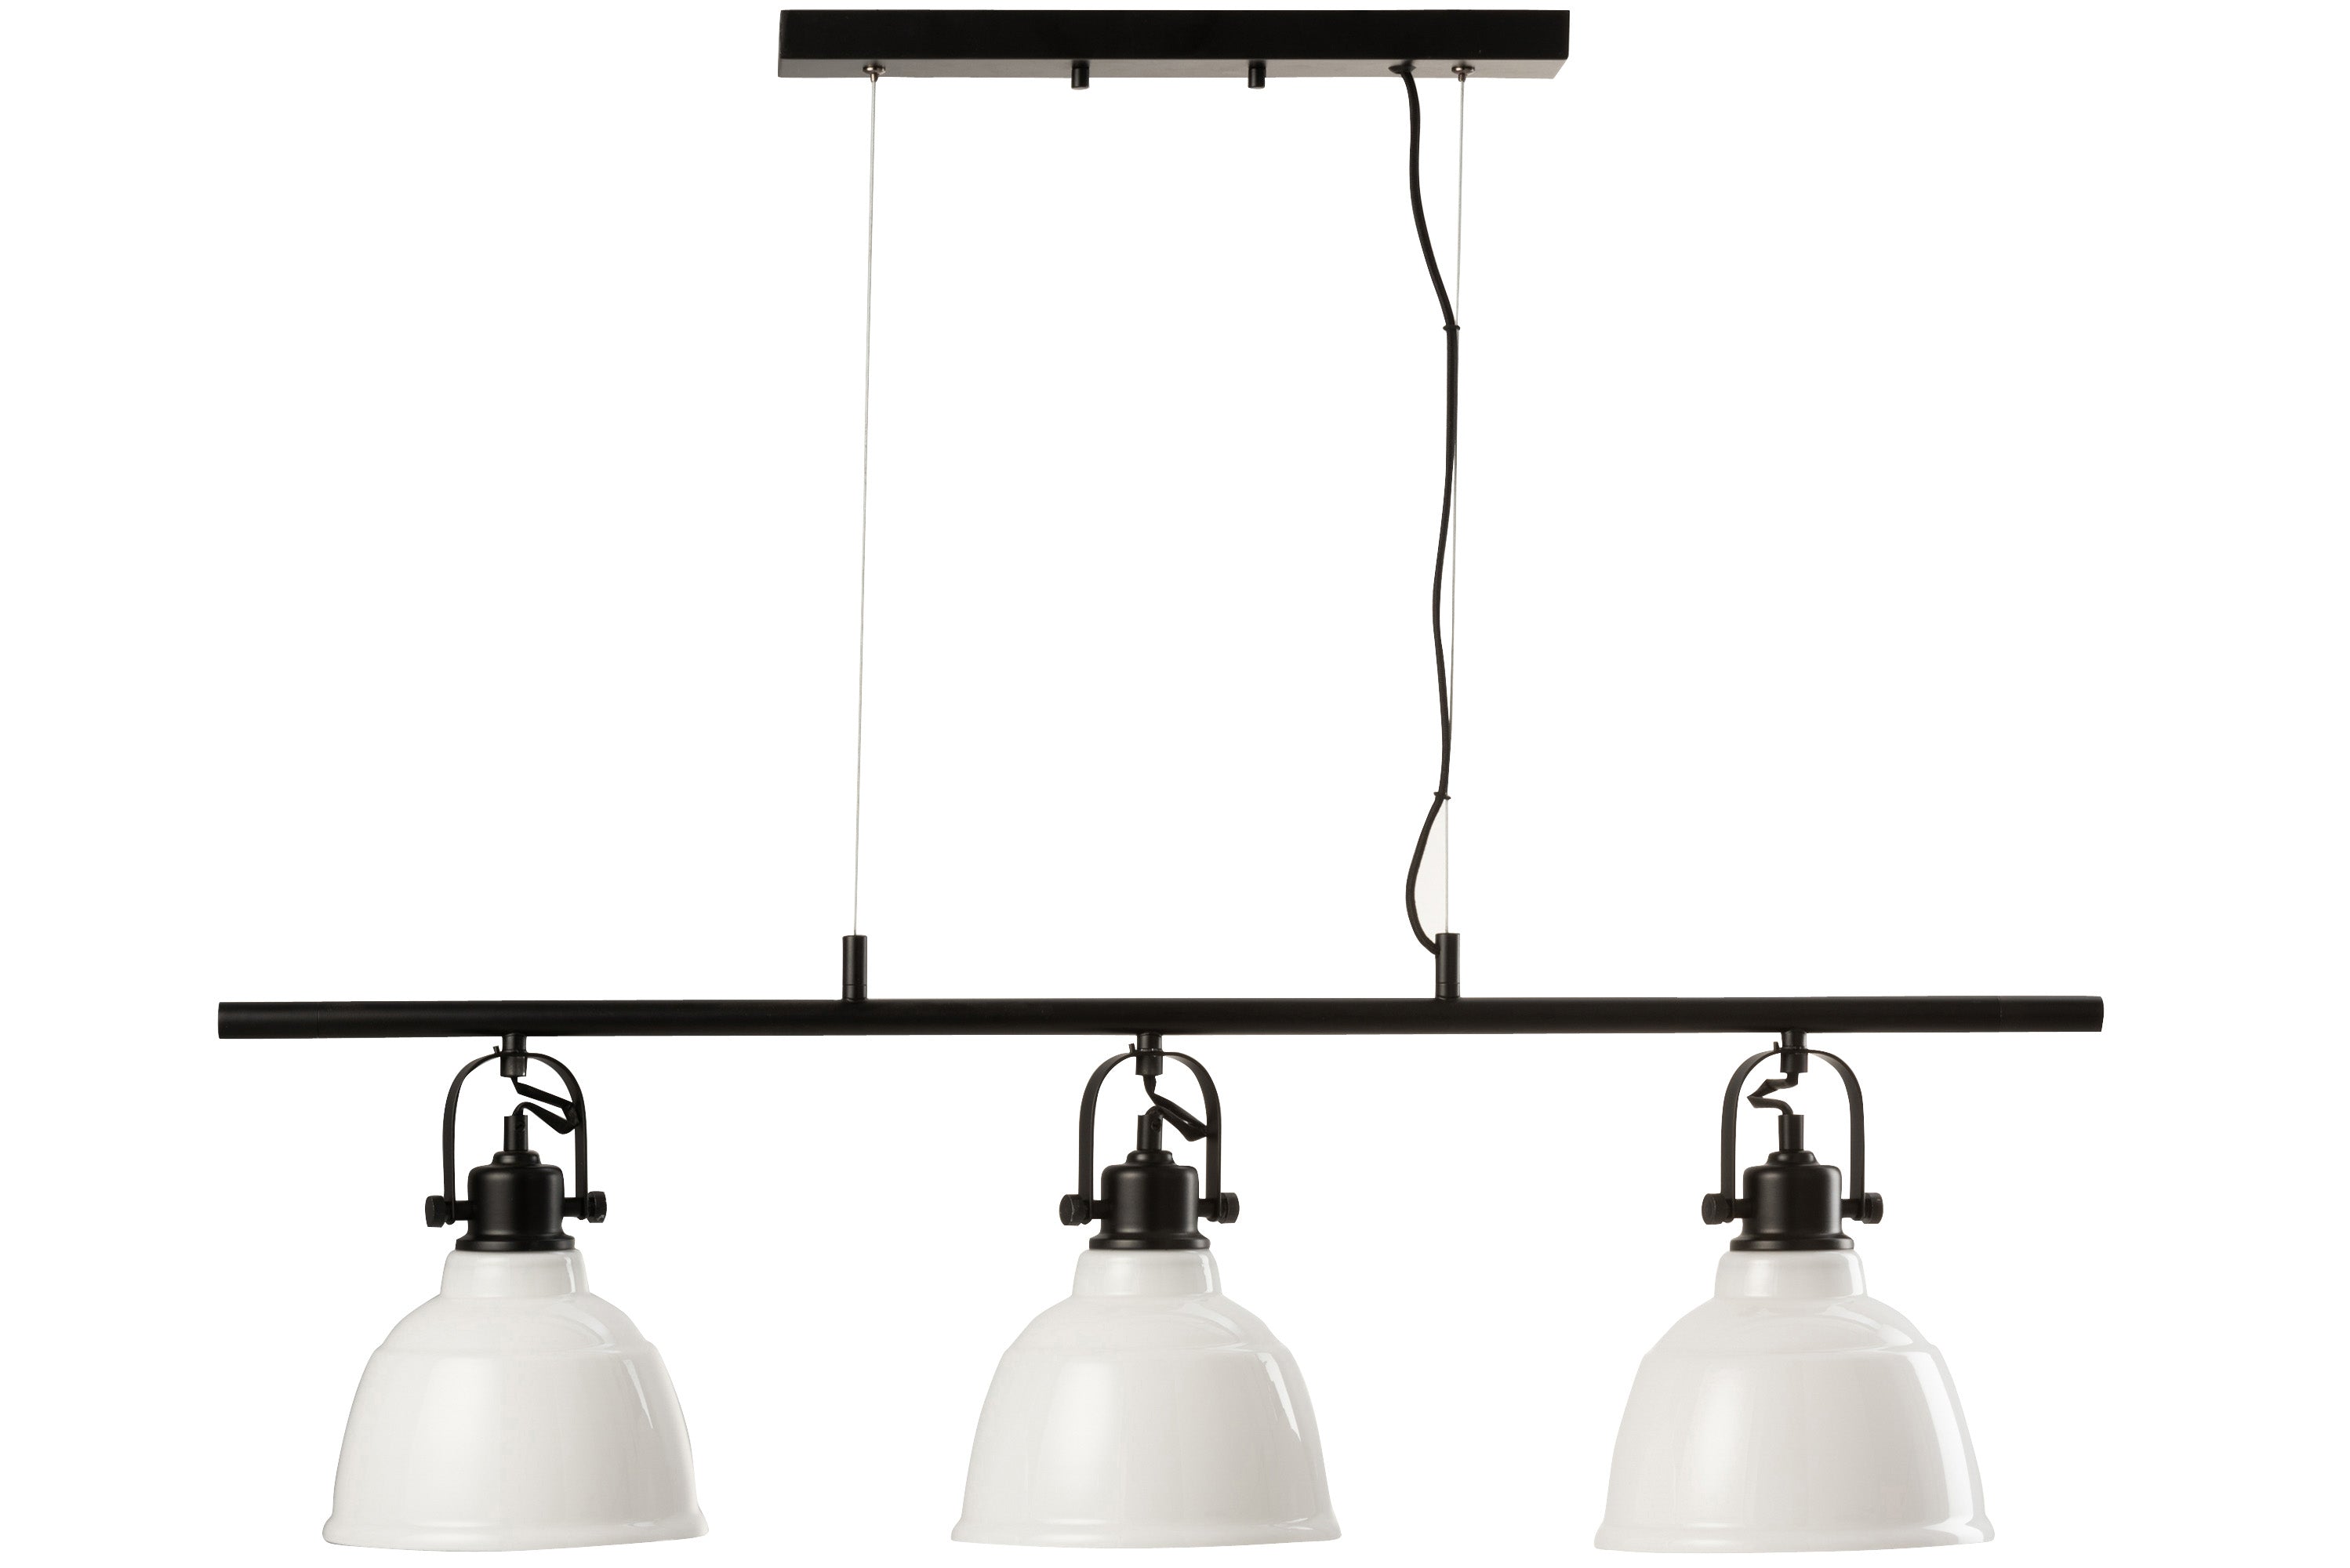 Pendelleuchte im Industrial Style; an zwei Metallschnüren sind an einer schwarzen Metallleiste  drei Lampen mit glockenförmigen weißen Glasschirmen angebracht.